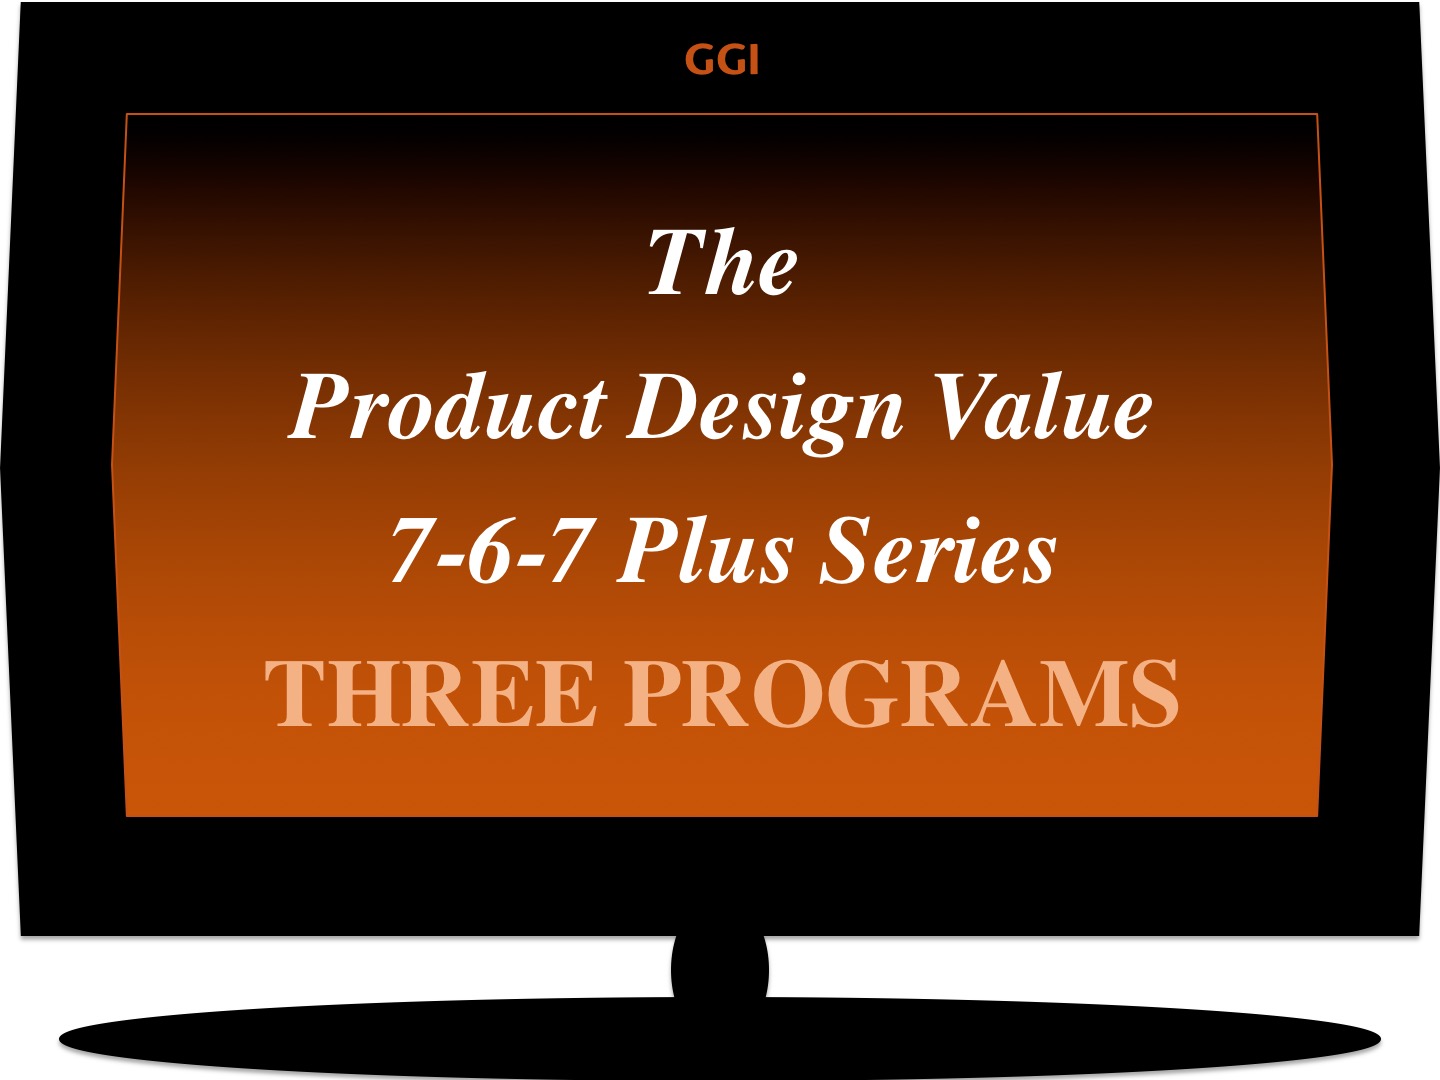 The Product Design Value 7-6-7 Plus Series